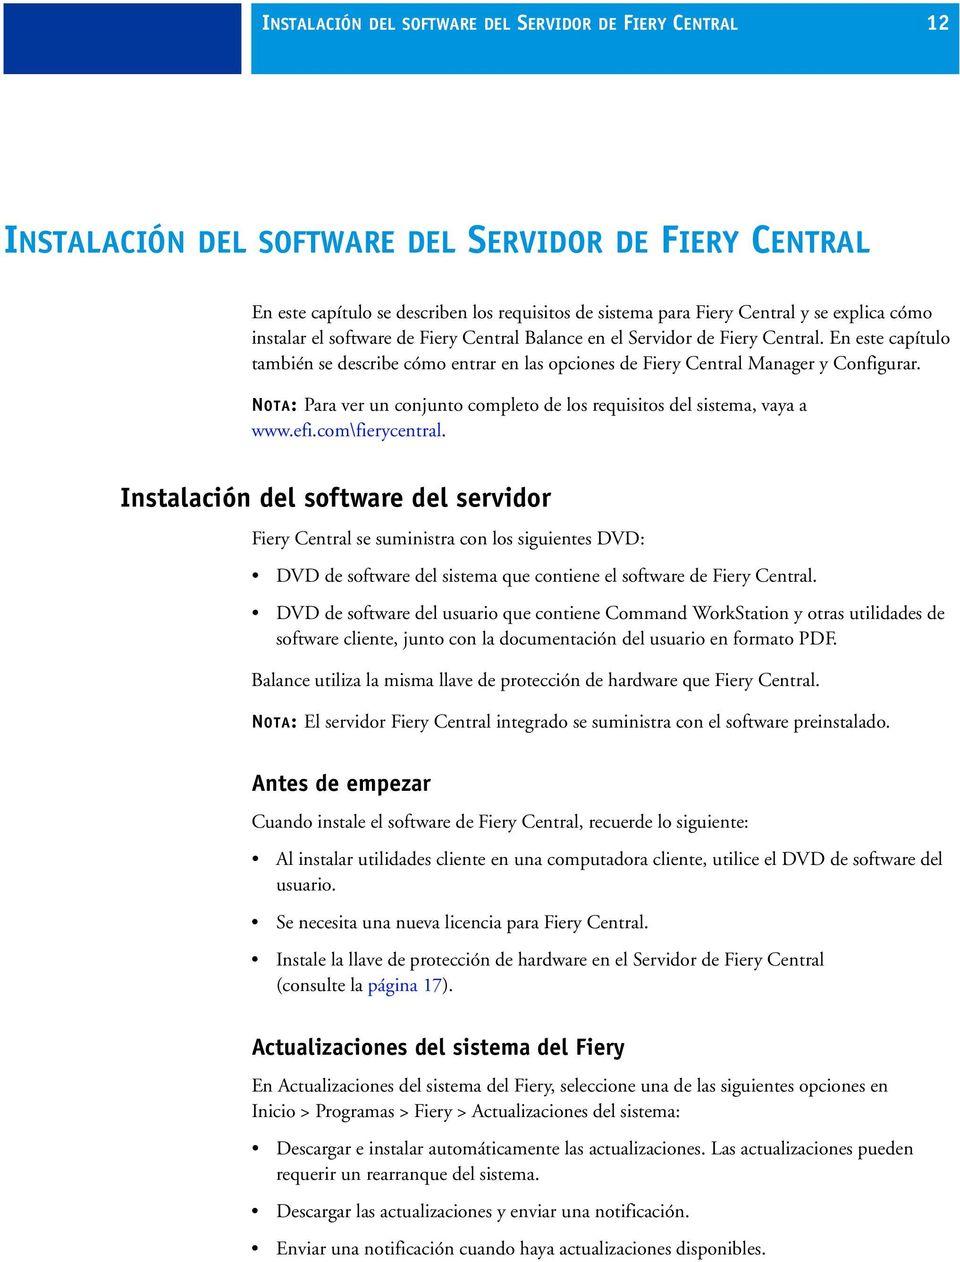 NOTA: Para ver un conjunto completo de los requisitos del sistema, vaya a www.efi.com\fierycentral.